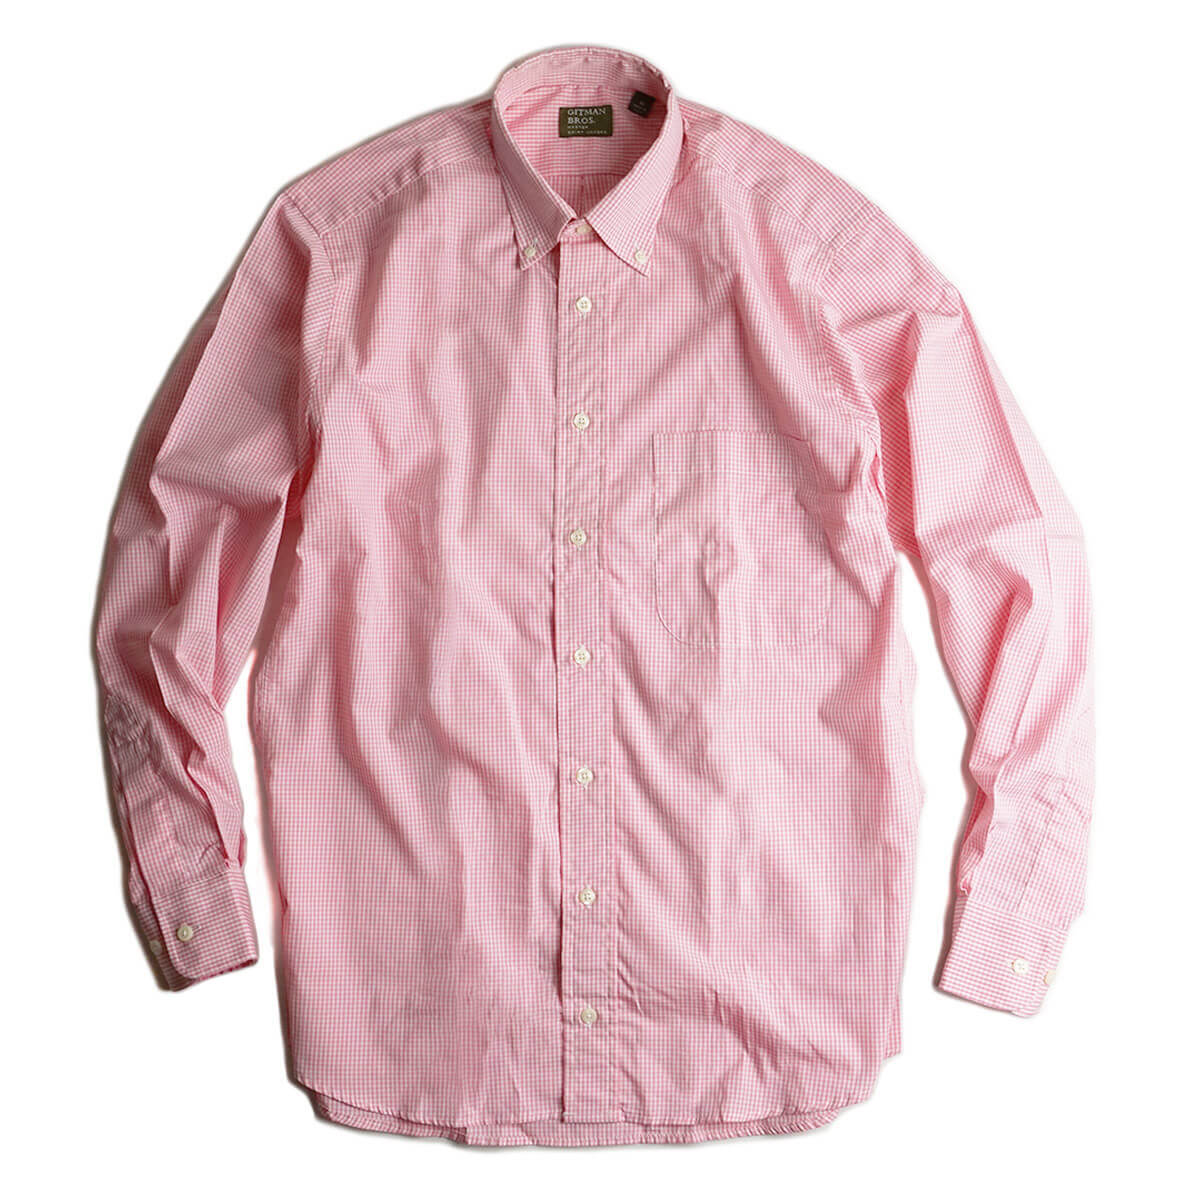 ギットマン ブラザーズ Gitman Bros. ギンガムチェック ボタンダウンシャツ ピンク/ホワイト アメリカ製 米国製 GINGHAM  CHECK B.D. SHIRT 長袖